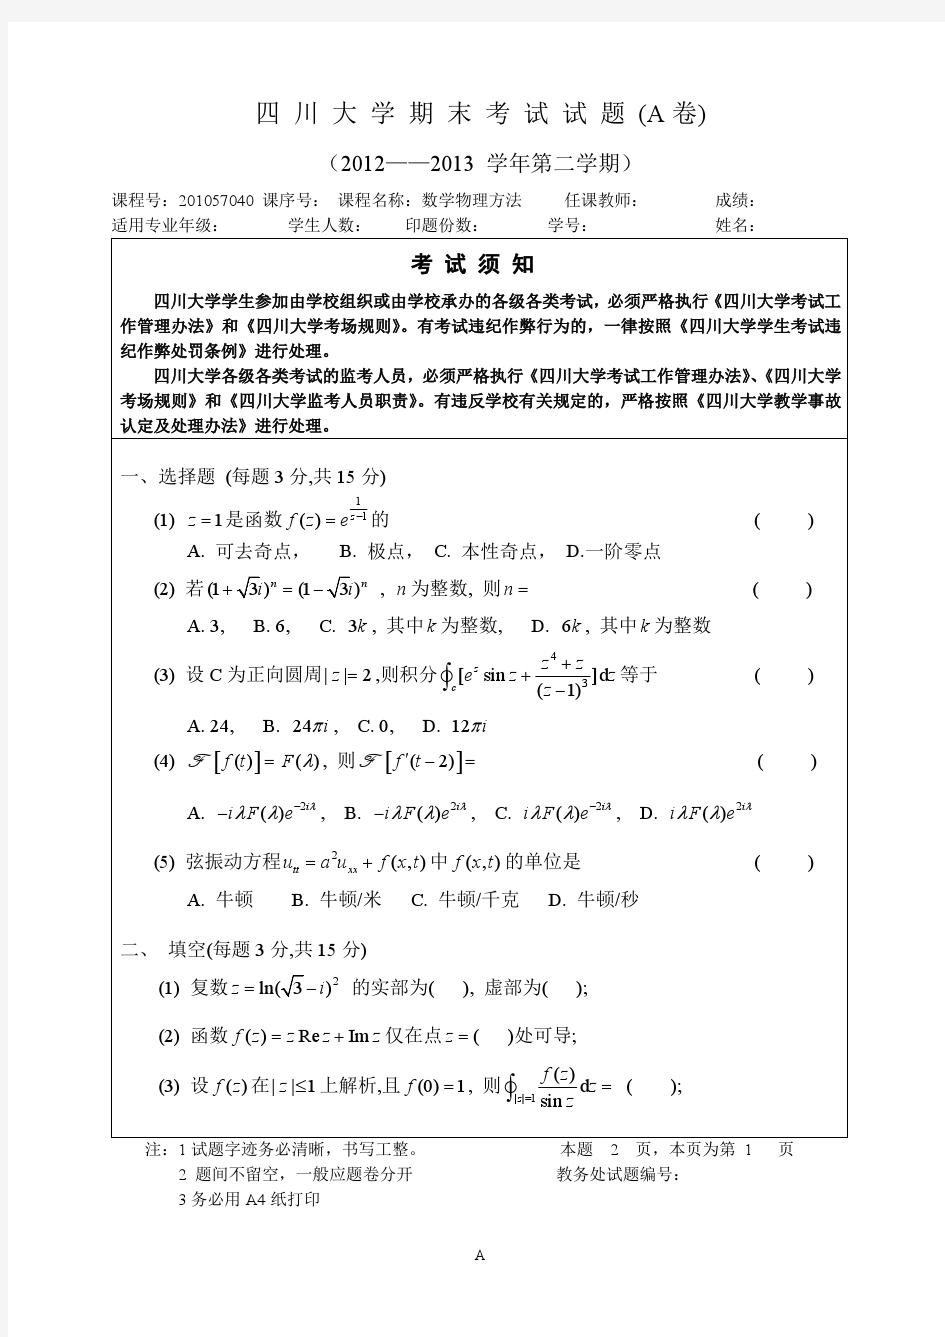 四川大学数学物理方法12-13下试题(A)